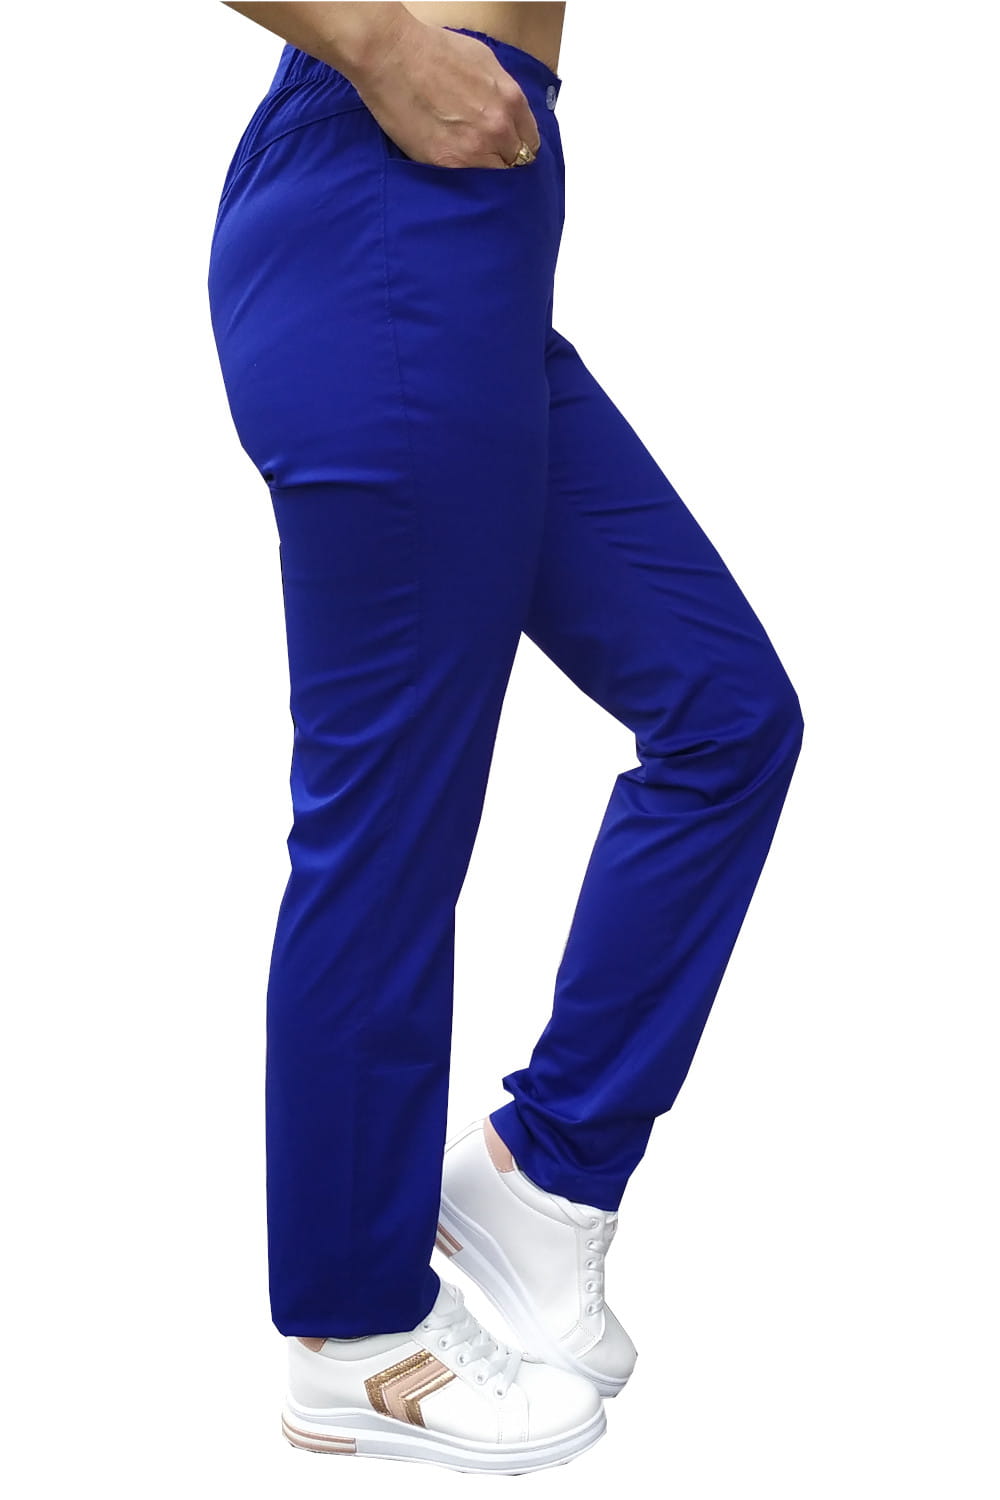 Zdravotnícke Nohavice Elastické Modré #1